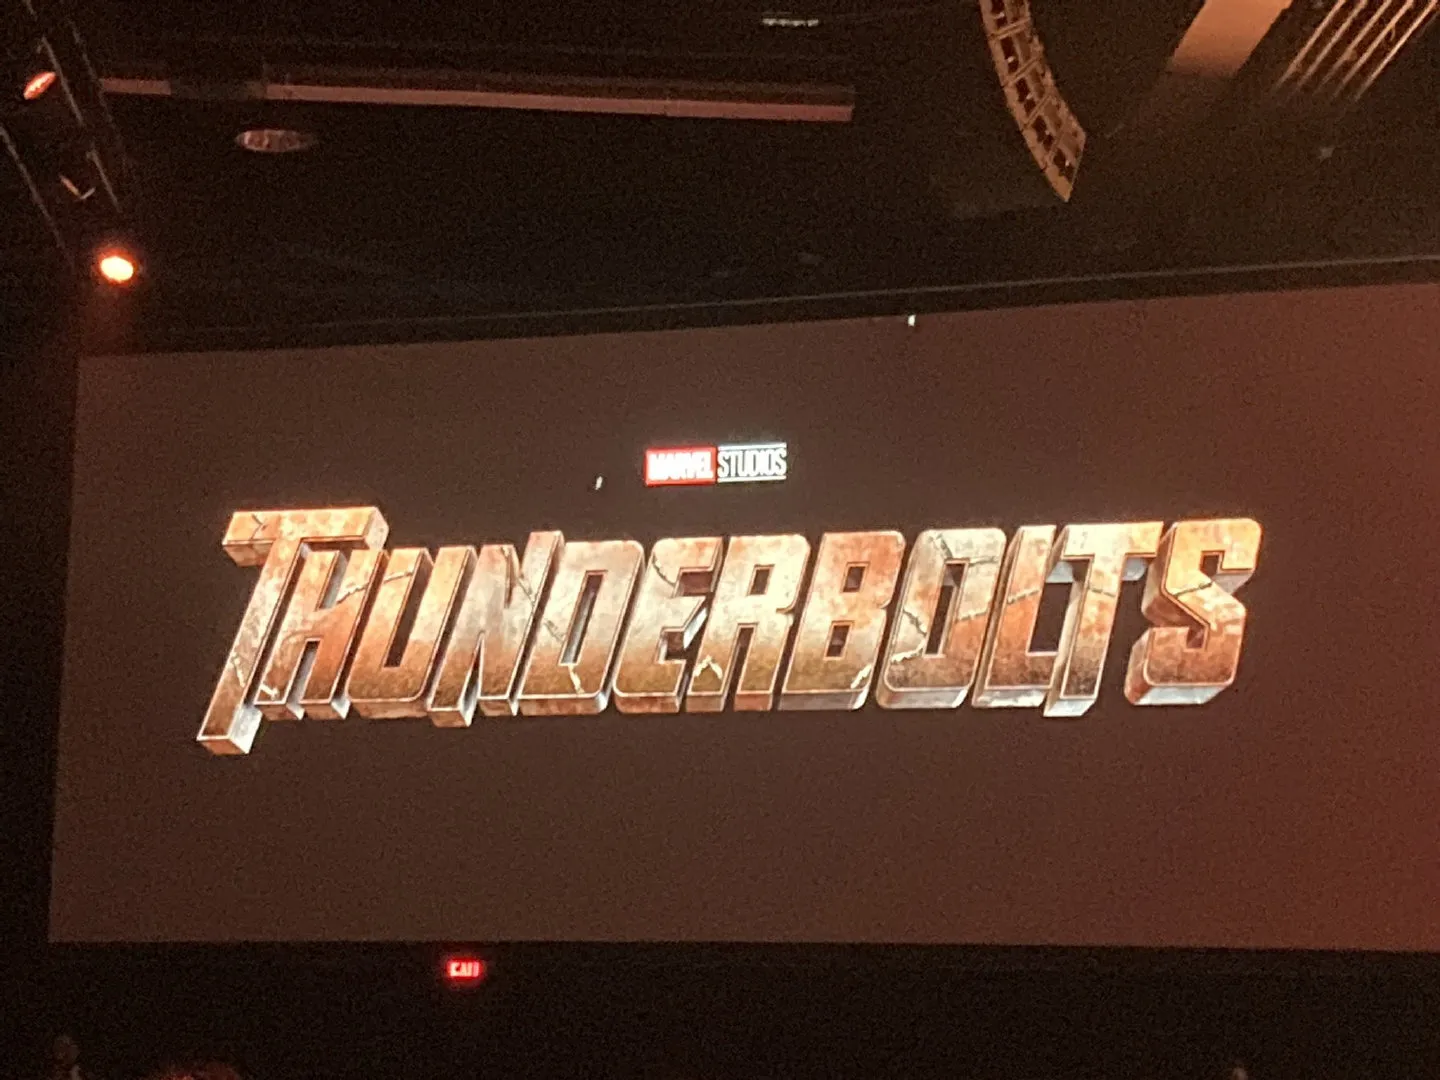 Marvel's new film 'Thunderbolts' cast member announced | FMV6